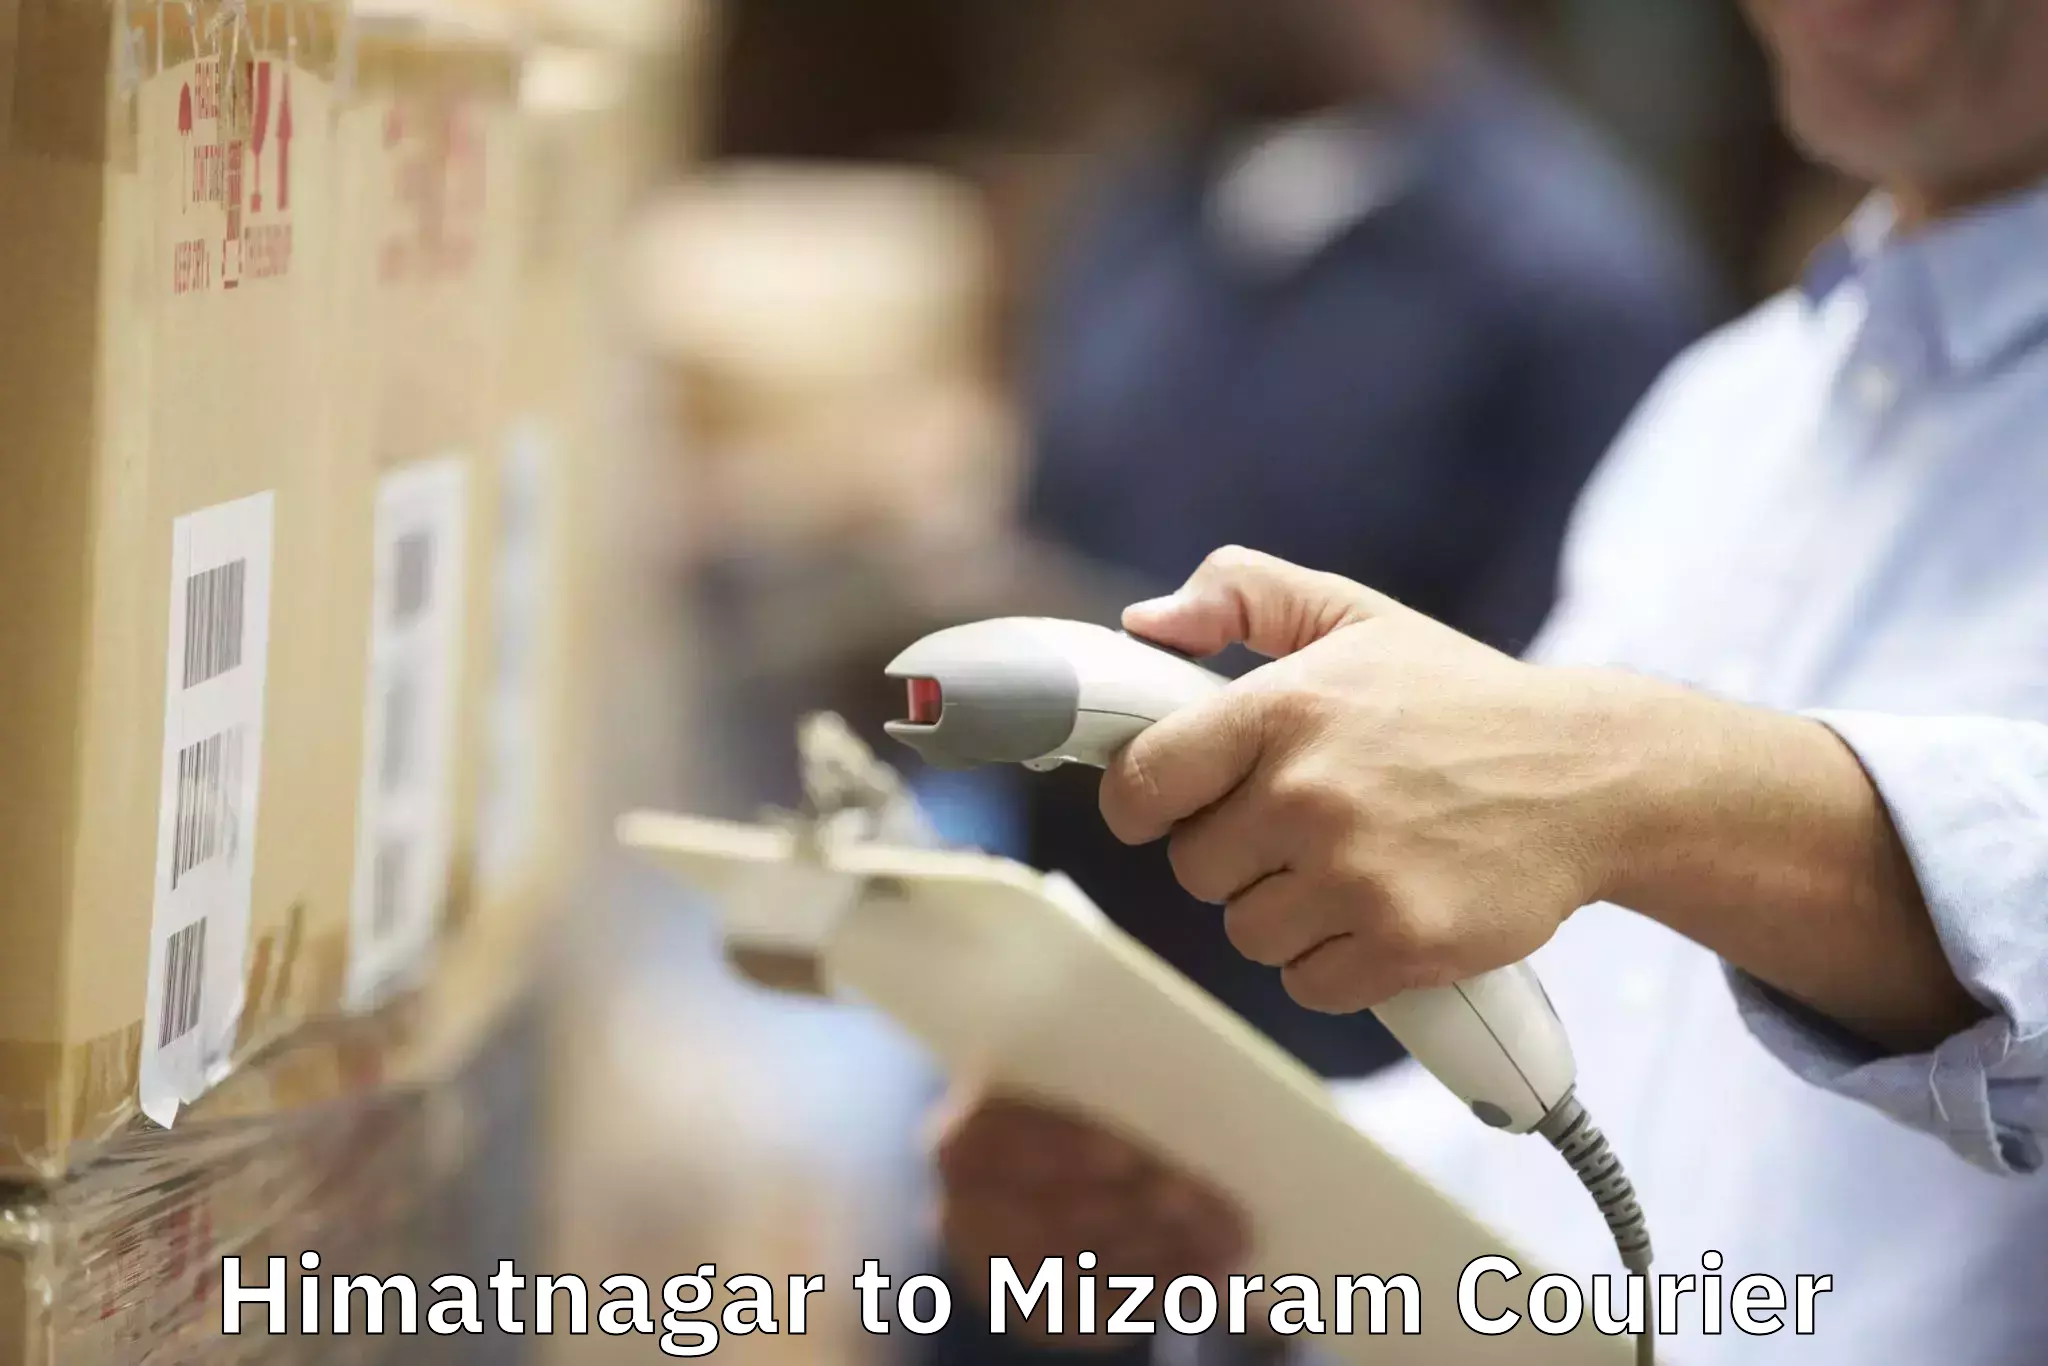 Customized moving experience Himatnagar to Mizoram